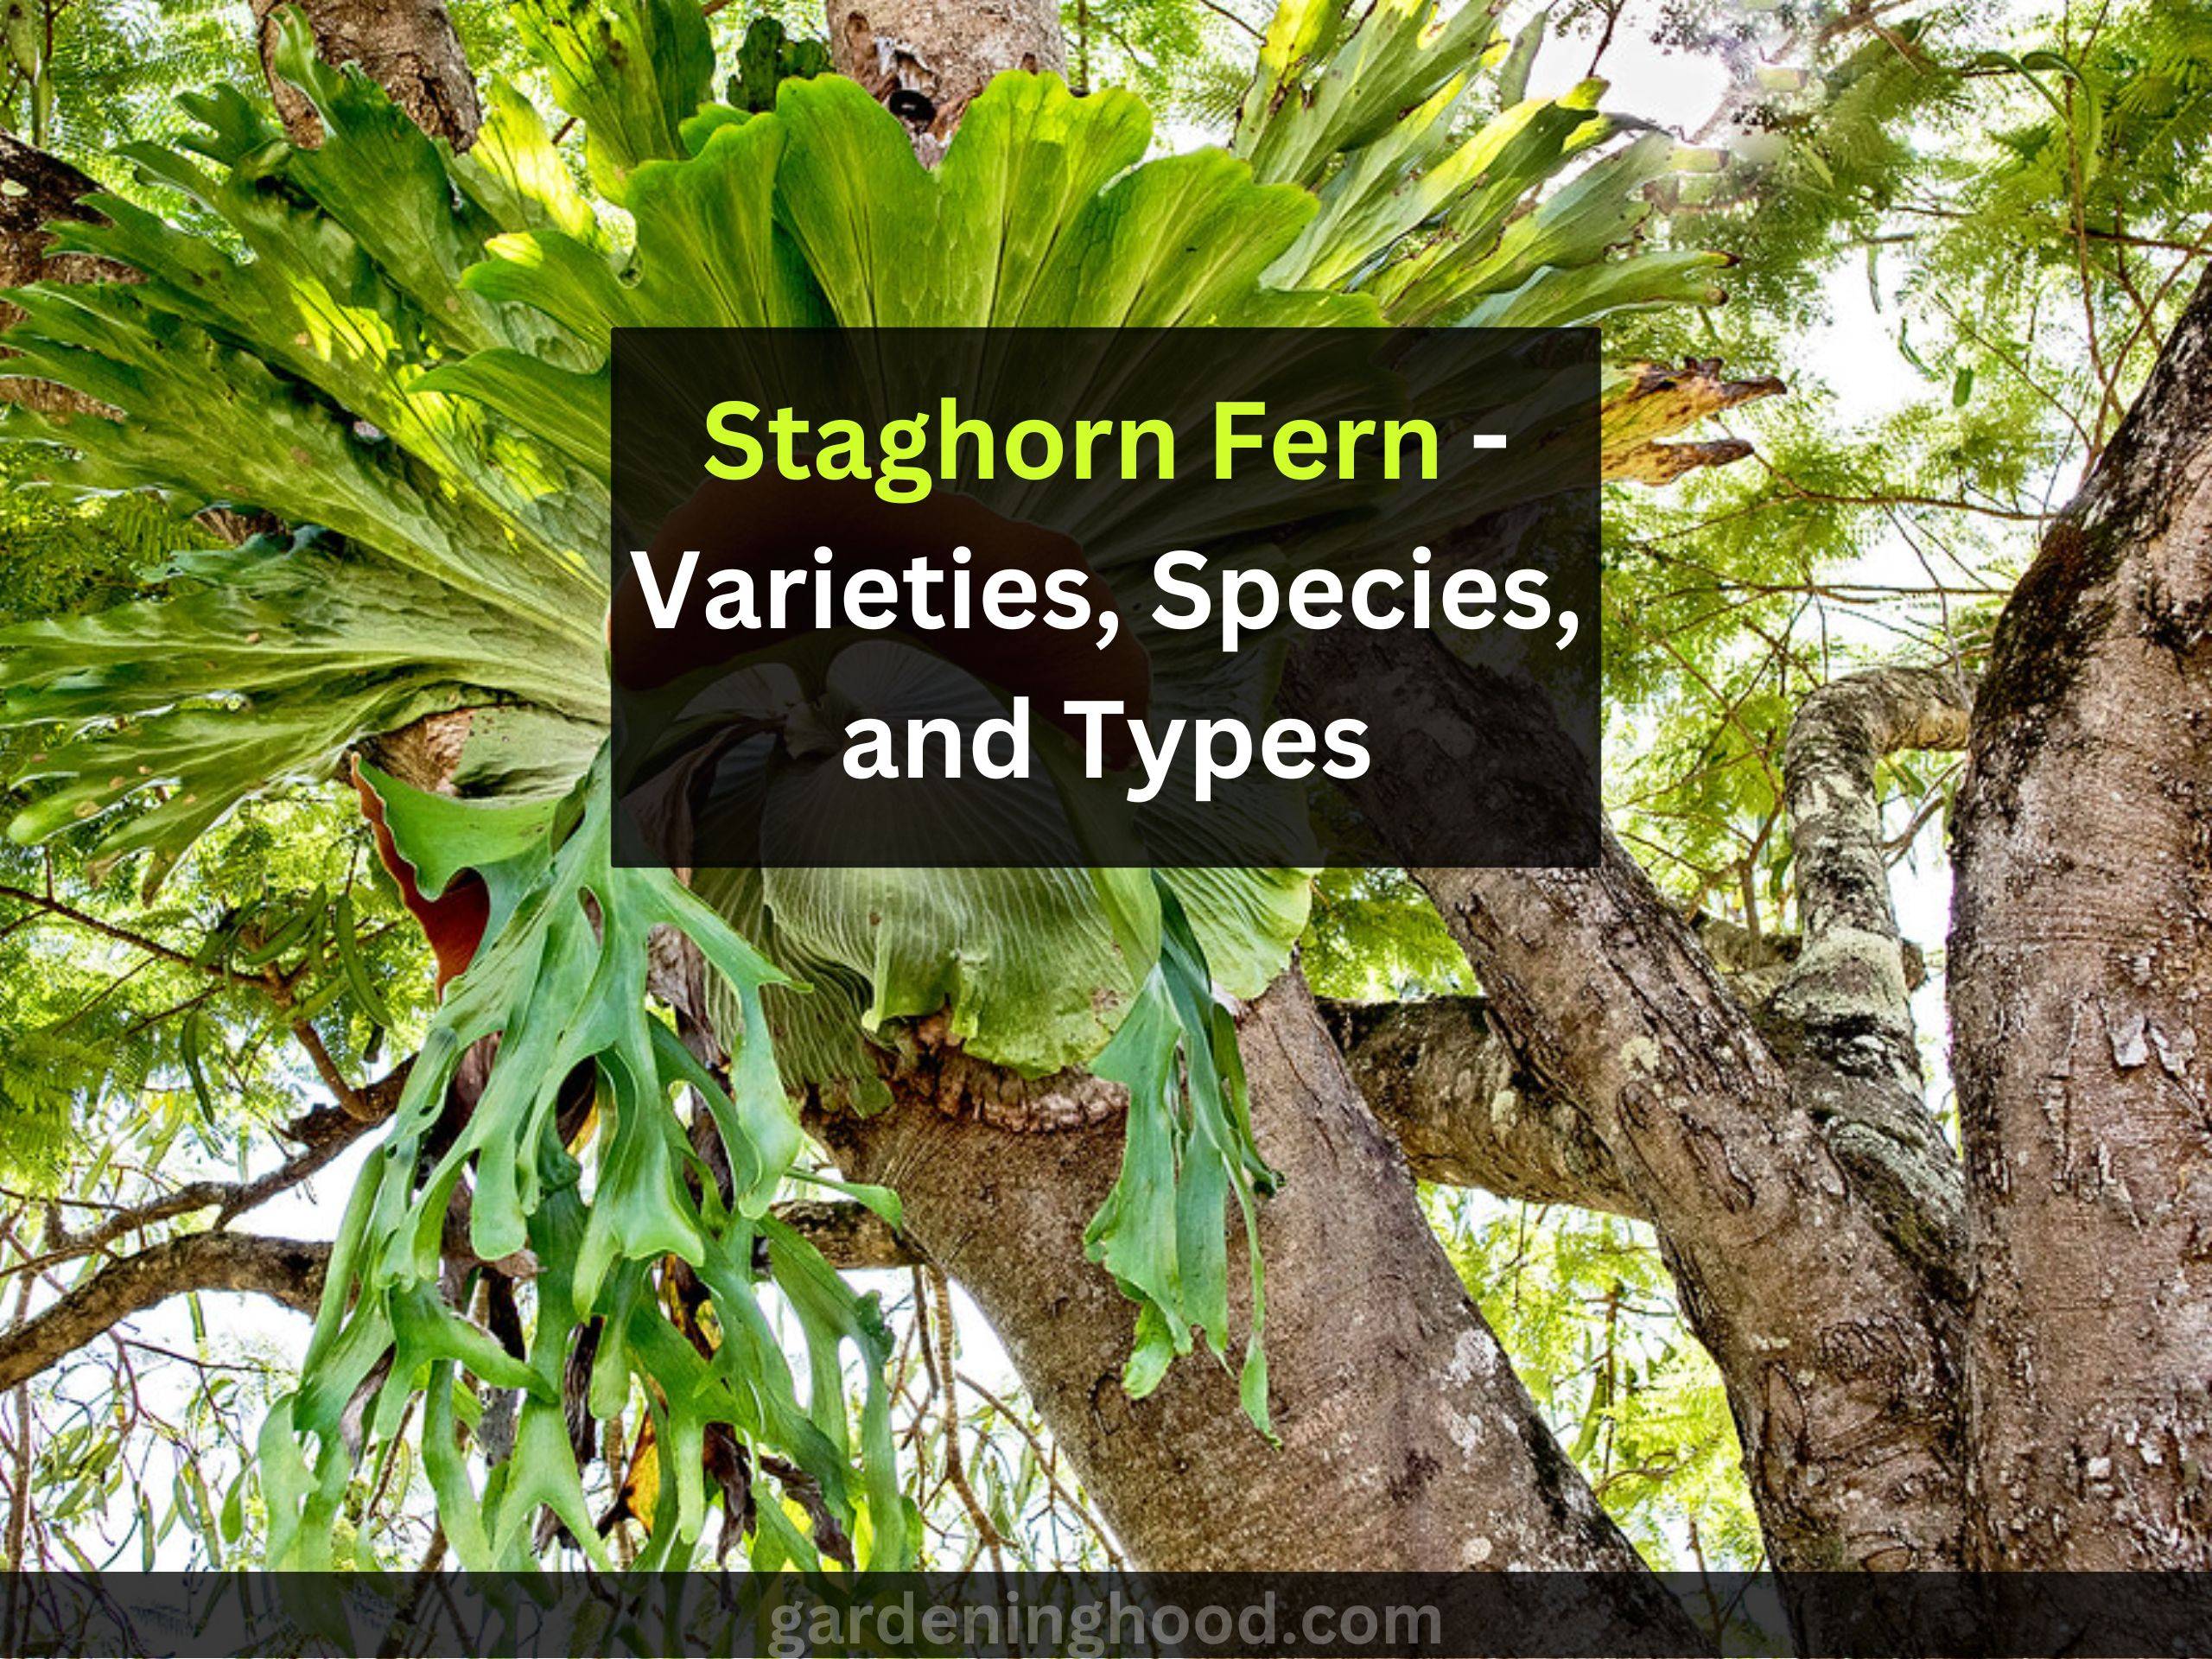 Staghorn Fern - Varieties, Species, and Types